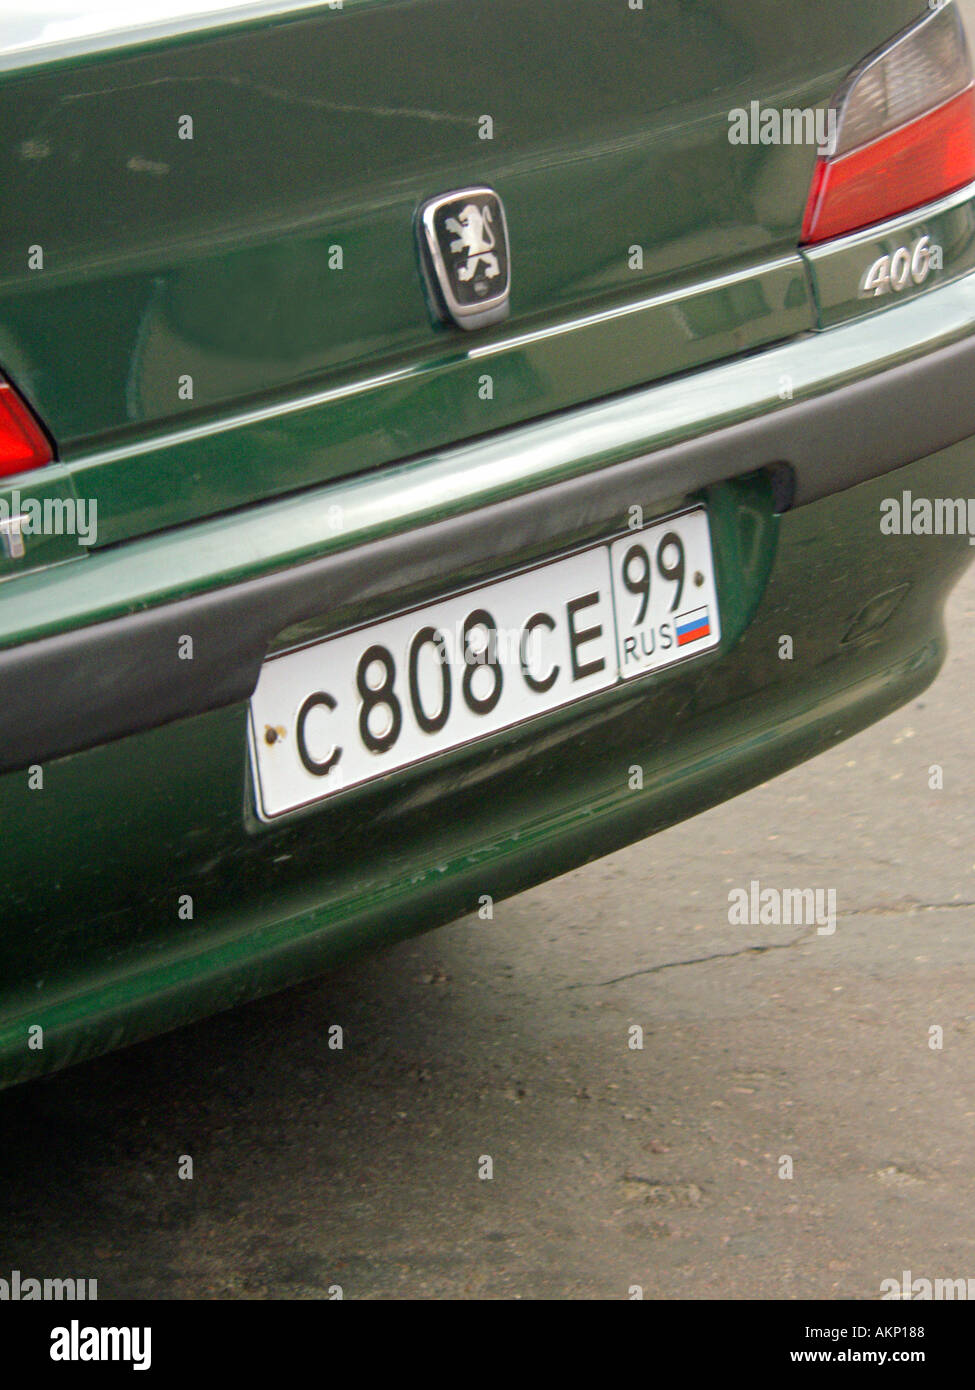 Belarus numberplate on Peugeot 406 Stock Photo